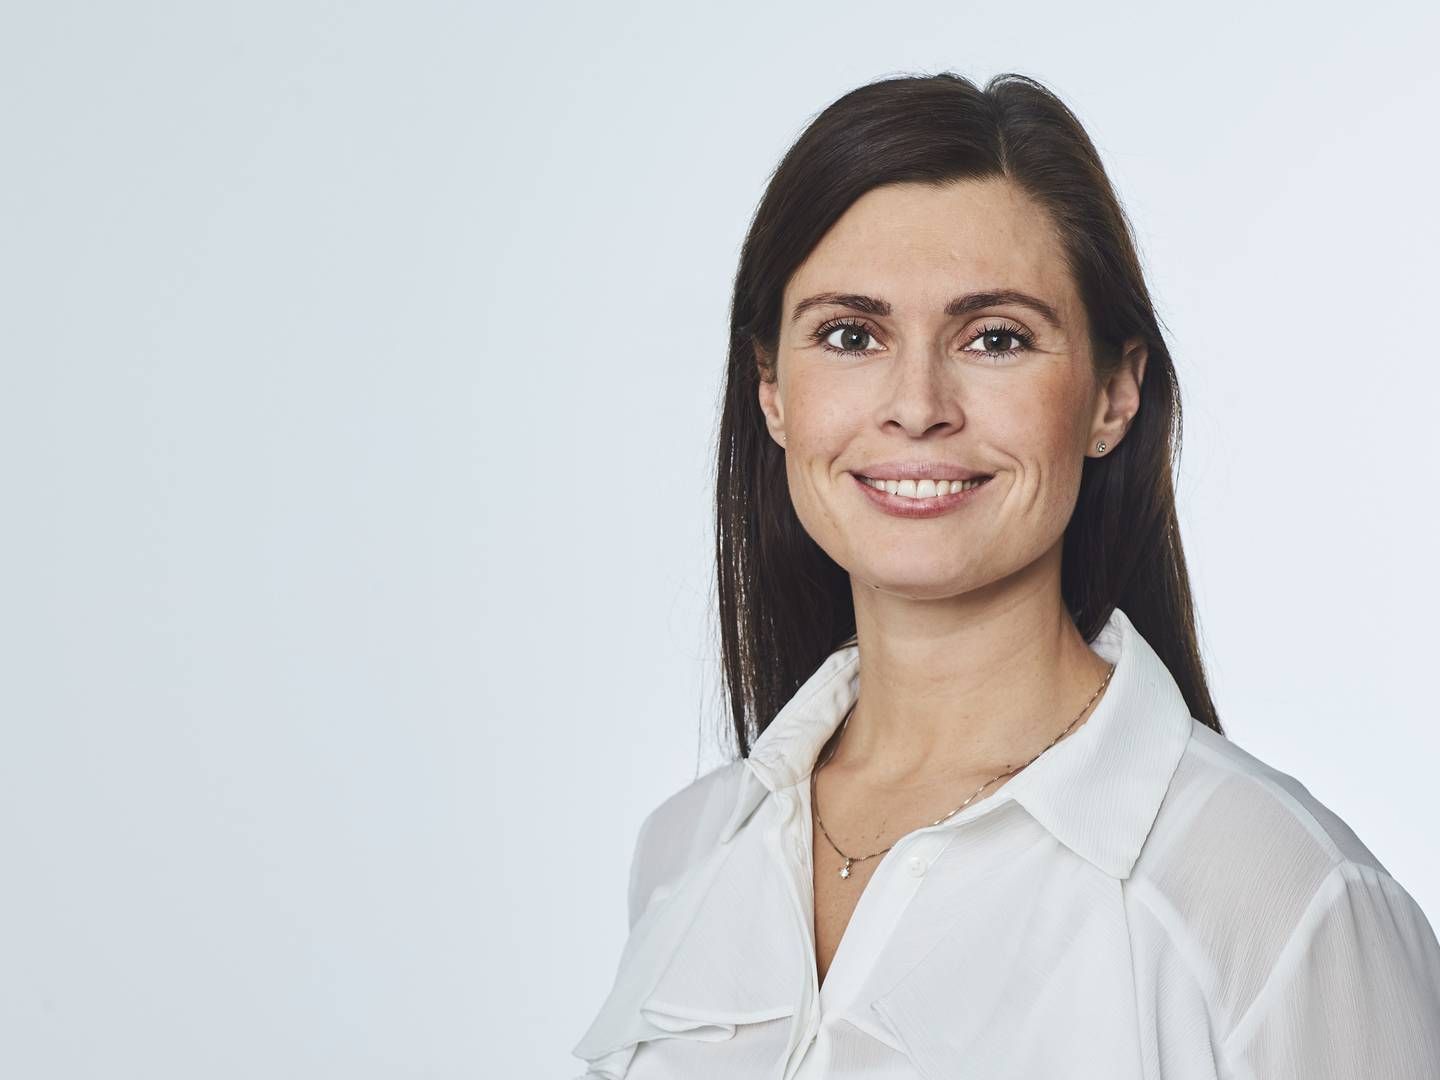 Trygs nye kommunikationschef hedder Camilla Lercke Odgaard. Hun har en fortid i blandt andet Danske Bank. | Foto: PR/ Tryg